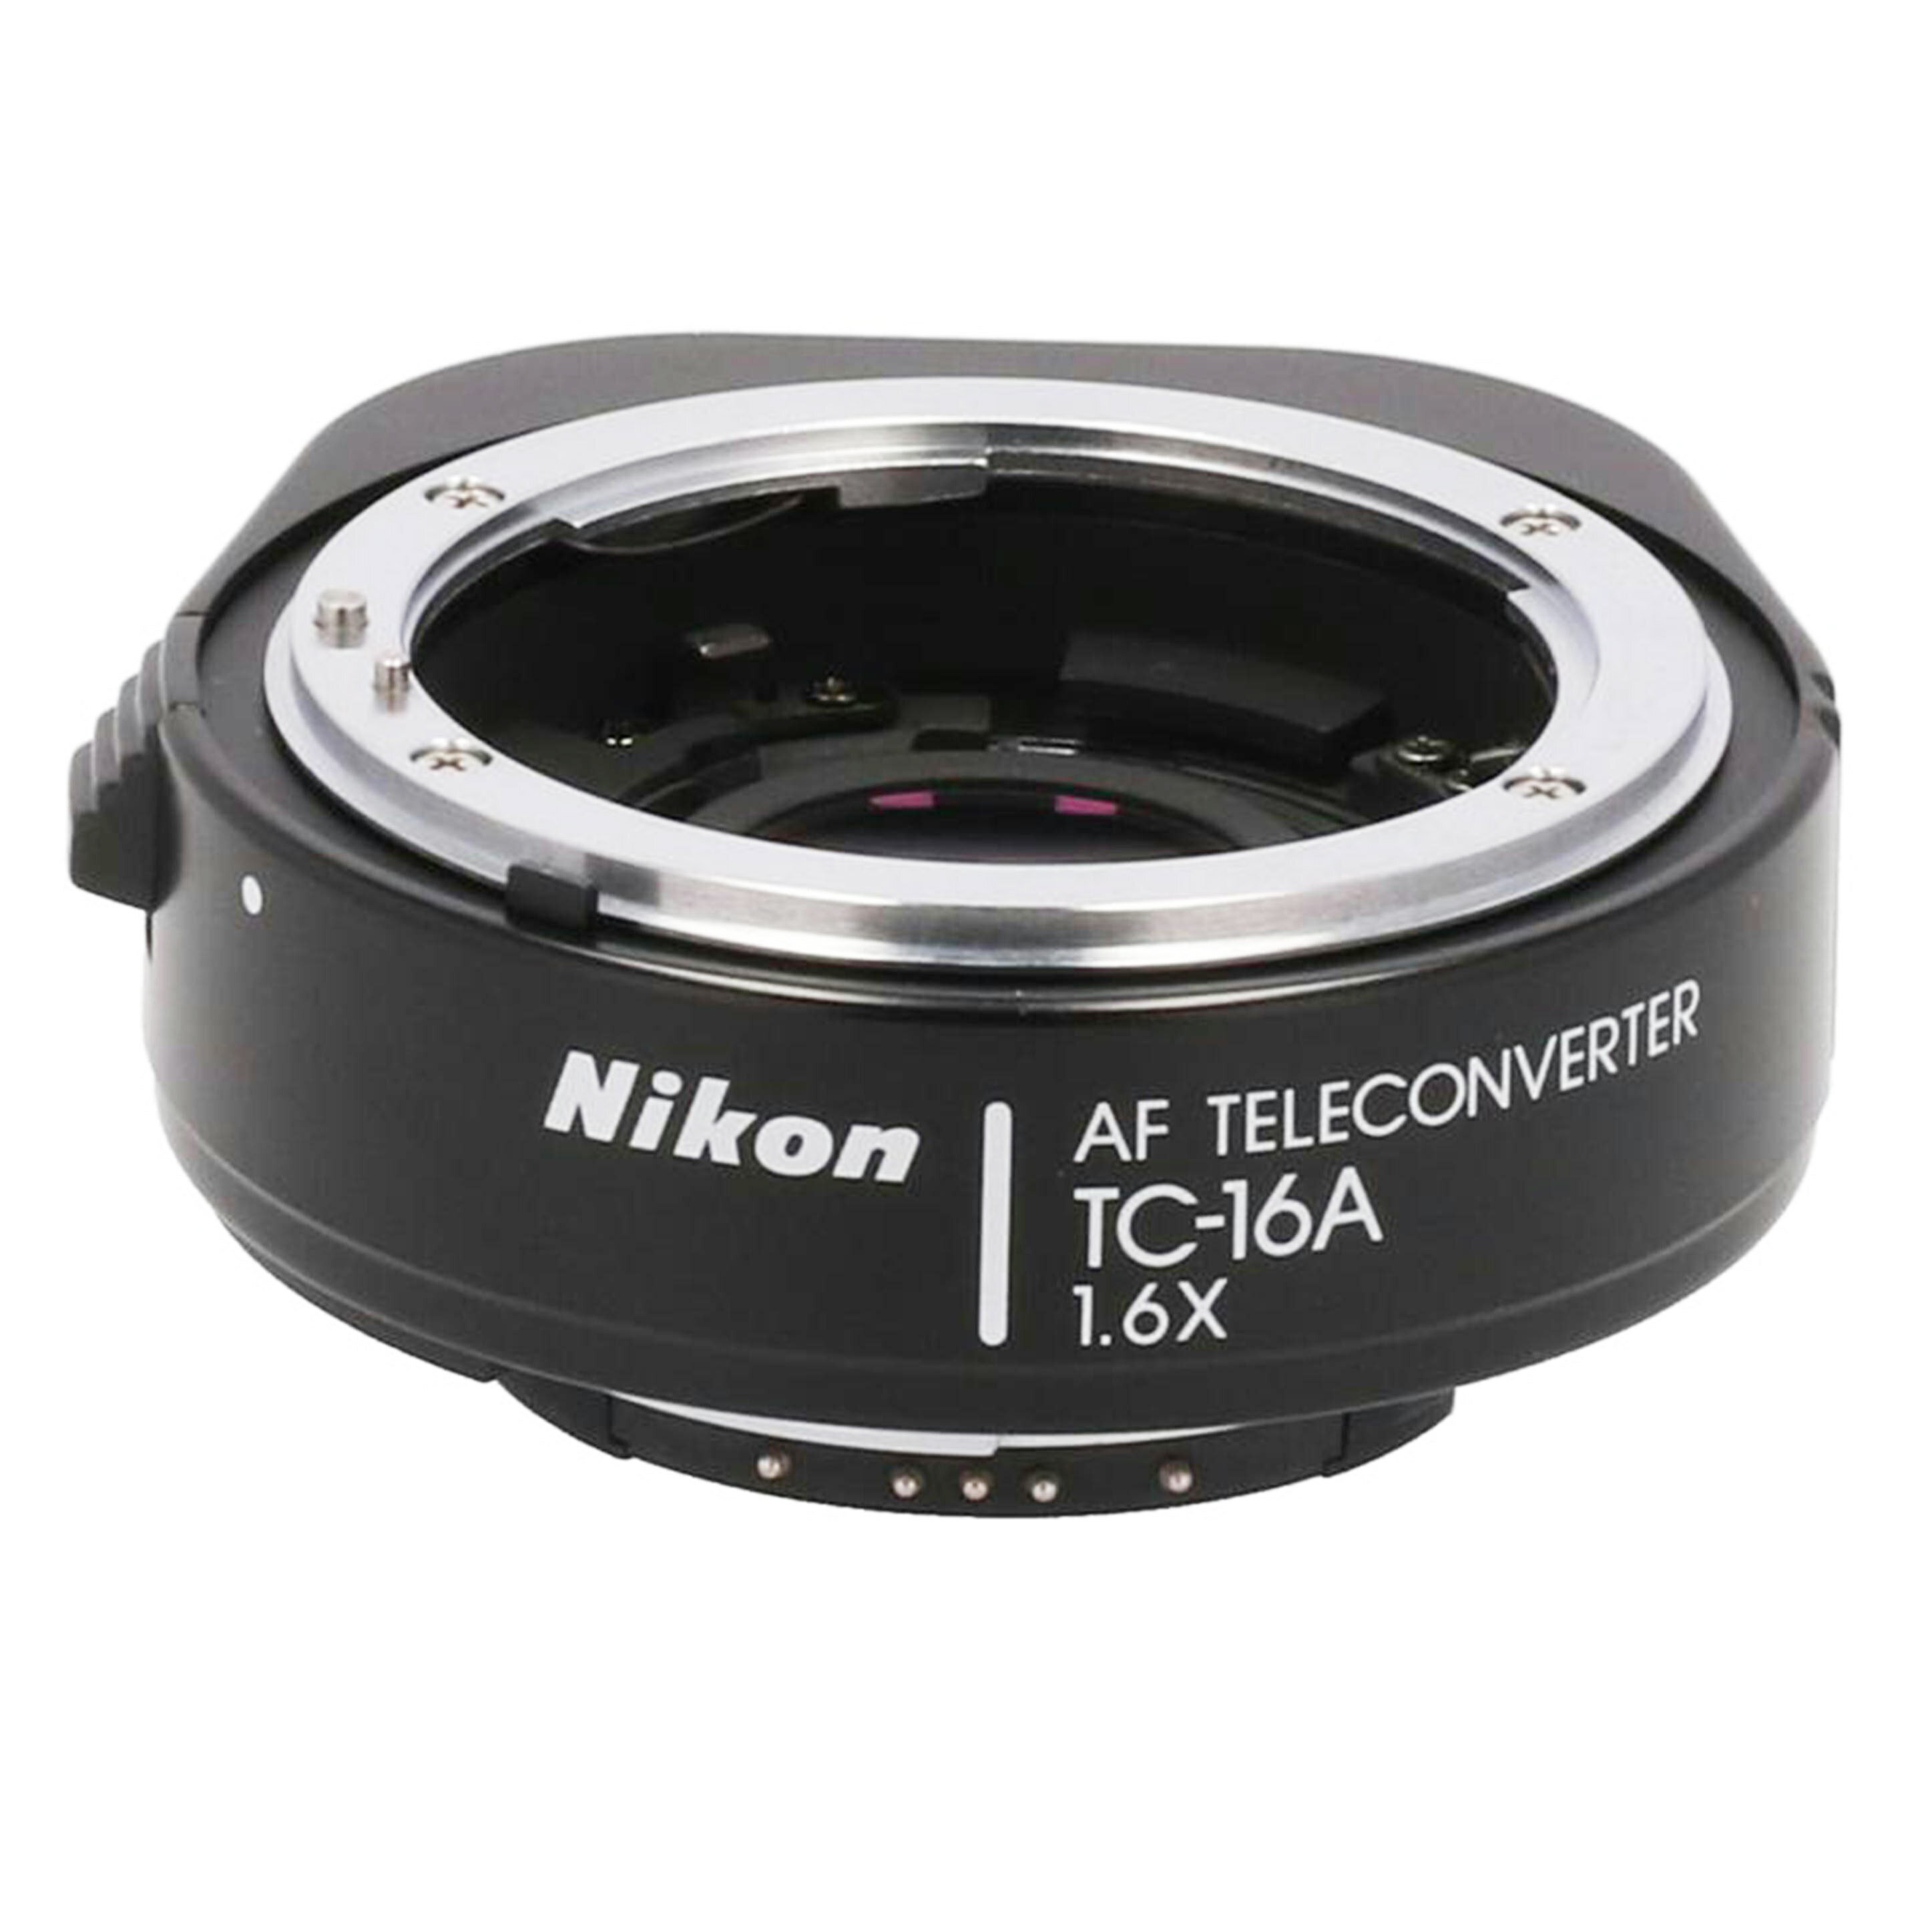 Nikon ニコン/テレコンバーター1.6倍/TC-16A/274731/カメラ関連/Bランク/62【中古】